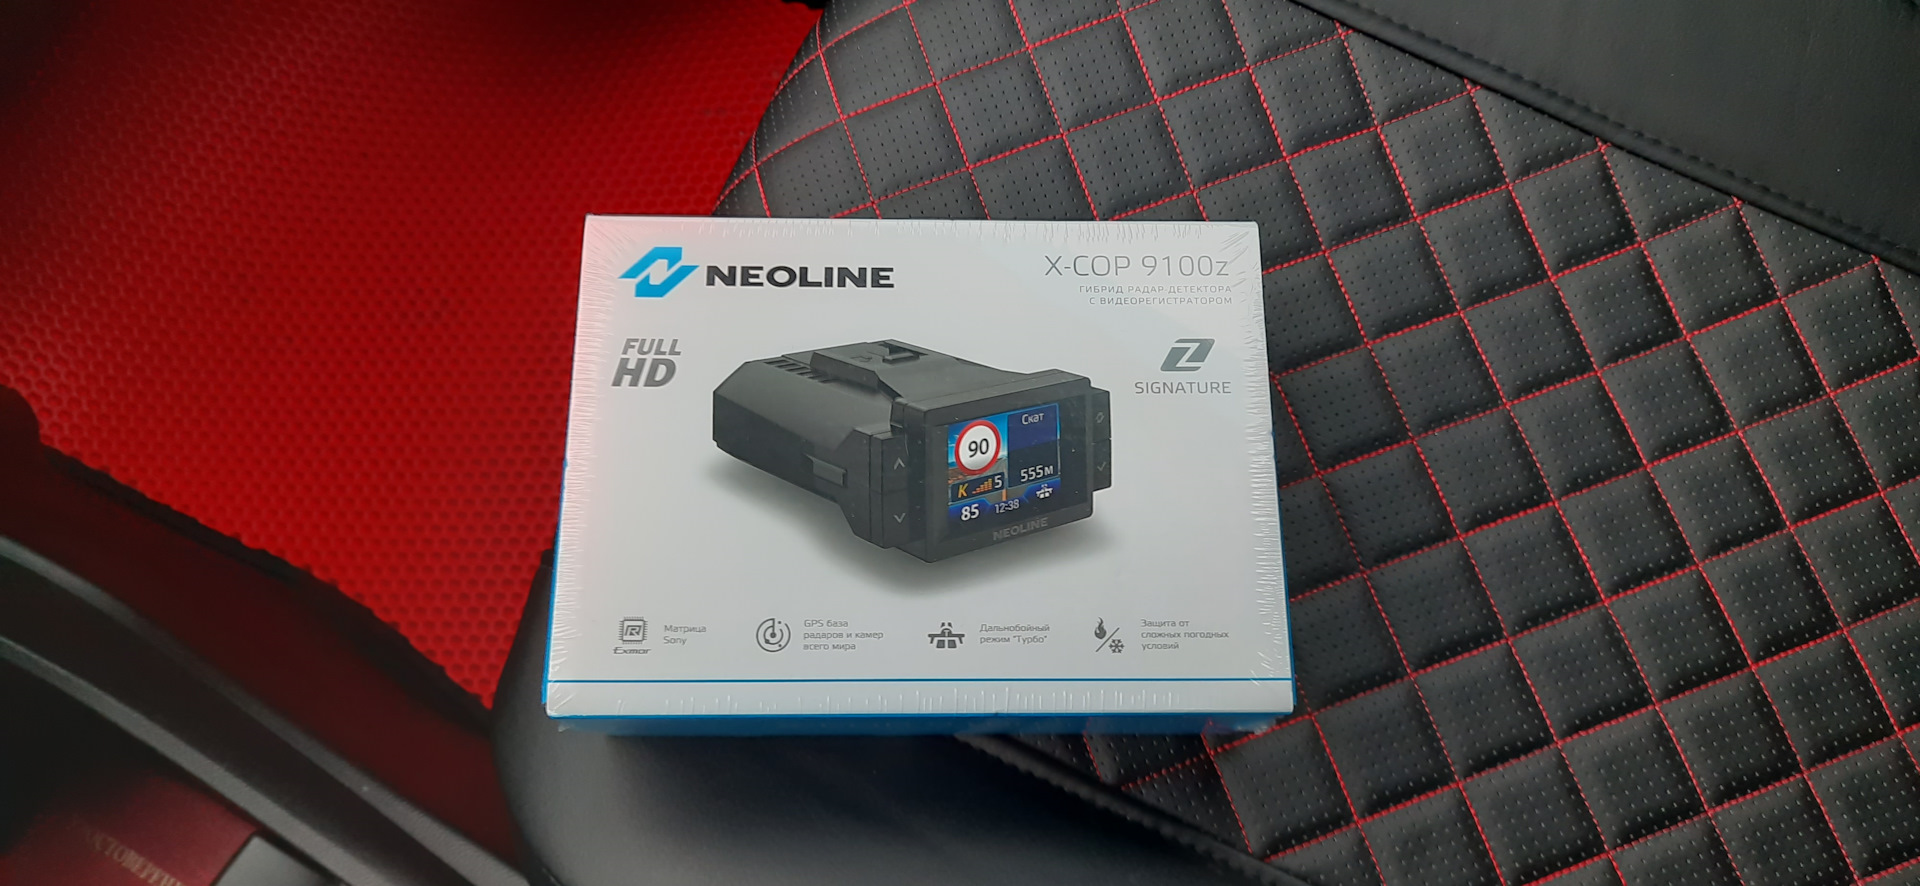 Neoline x cop 9100z. X cop 9100z. Neoline х-сор 9100z. Neoline x cop 9100z коробка задняя.